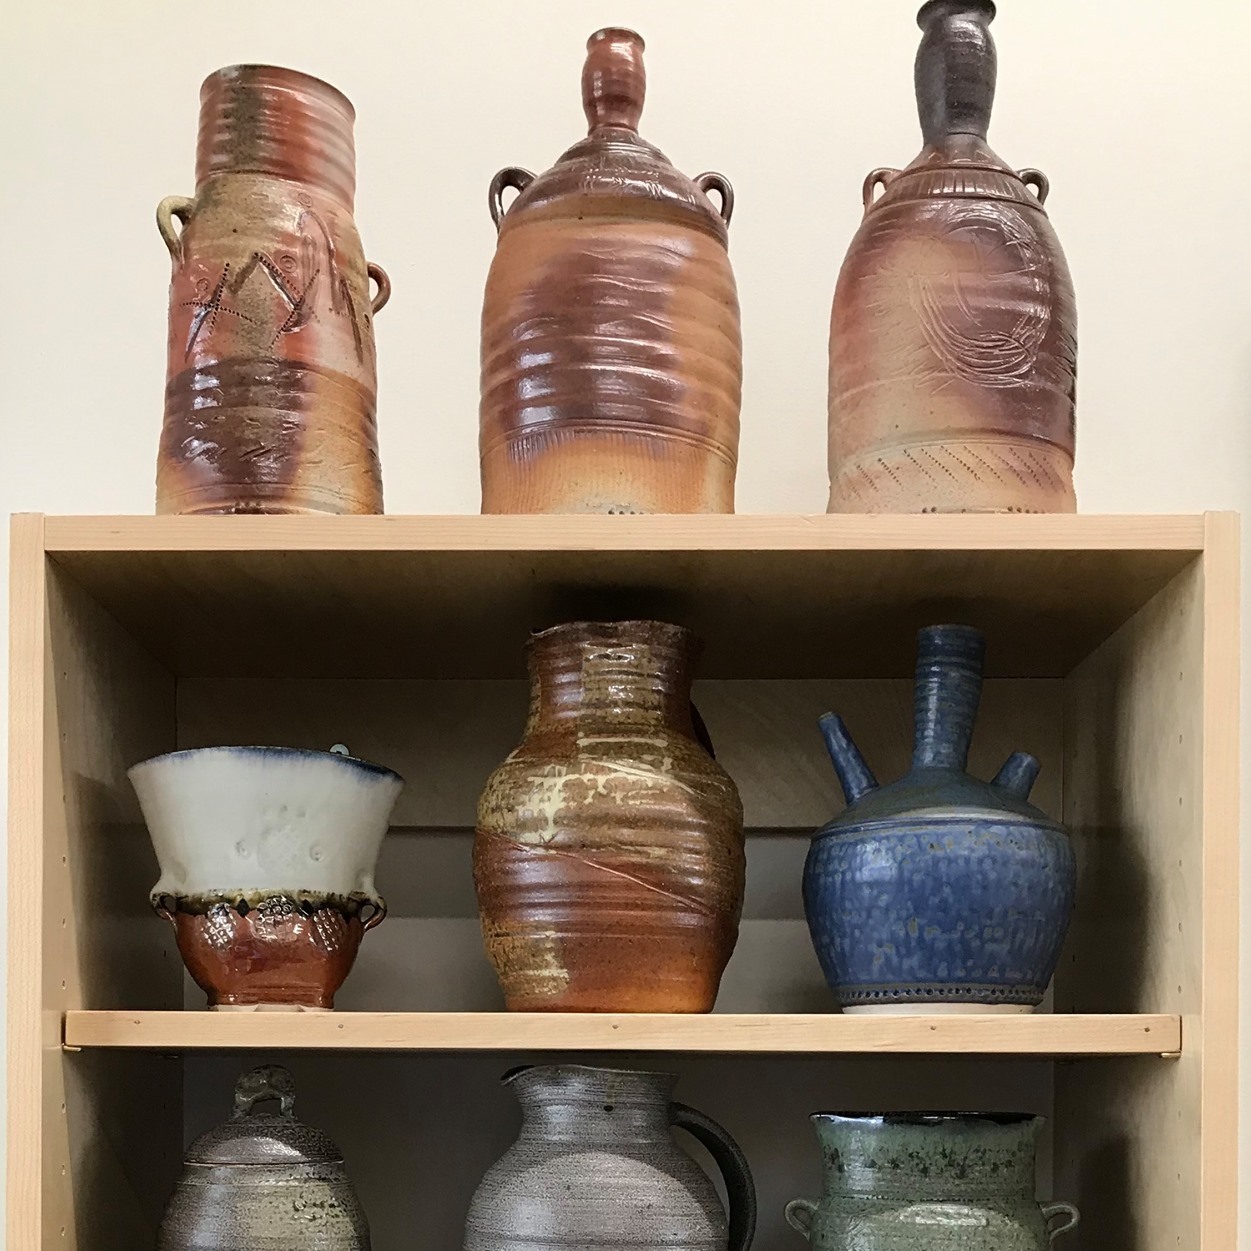 Display of vases at Tom Brewer Gallery.